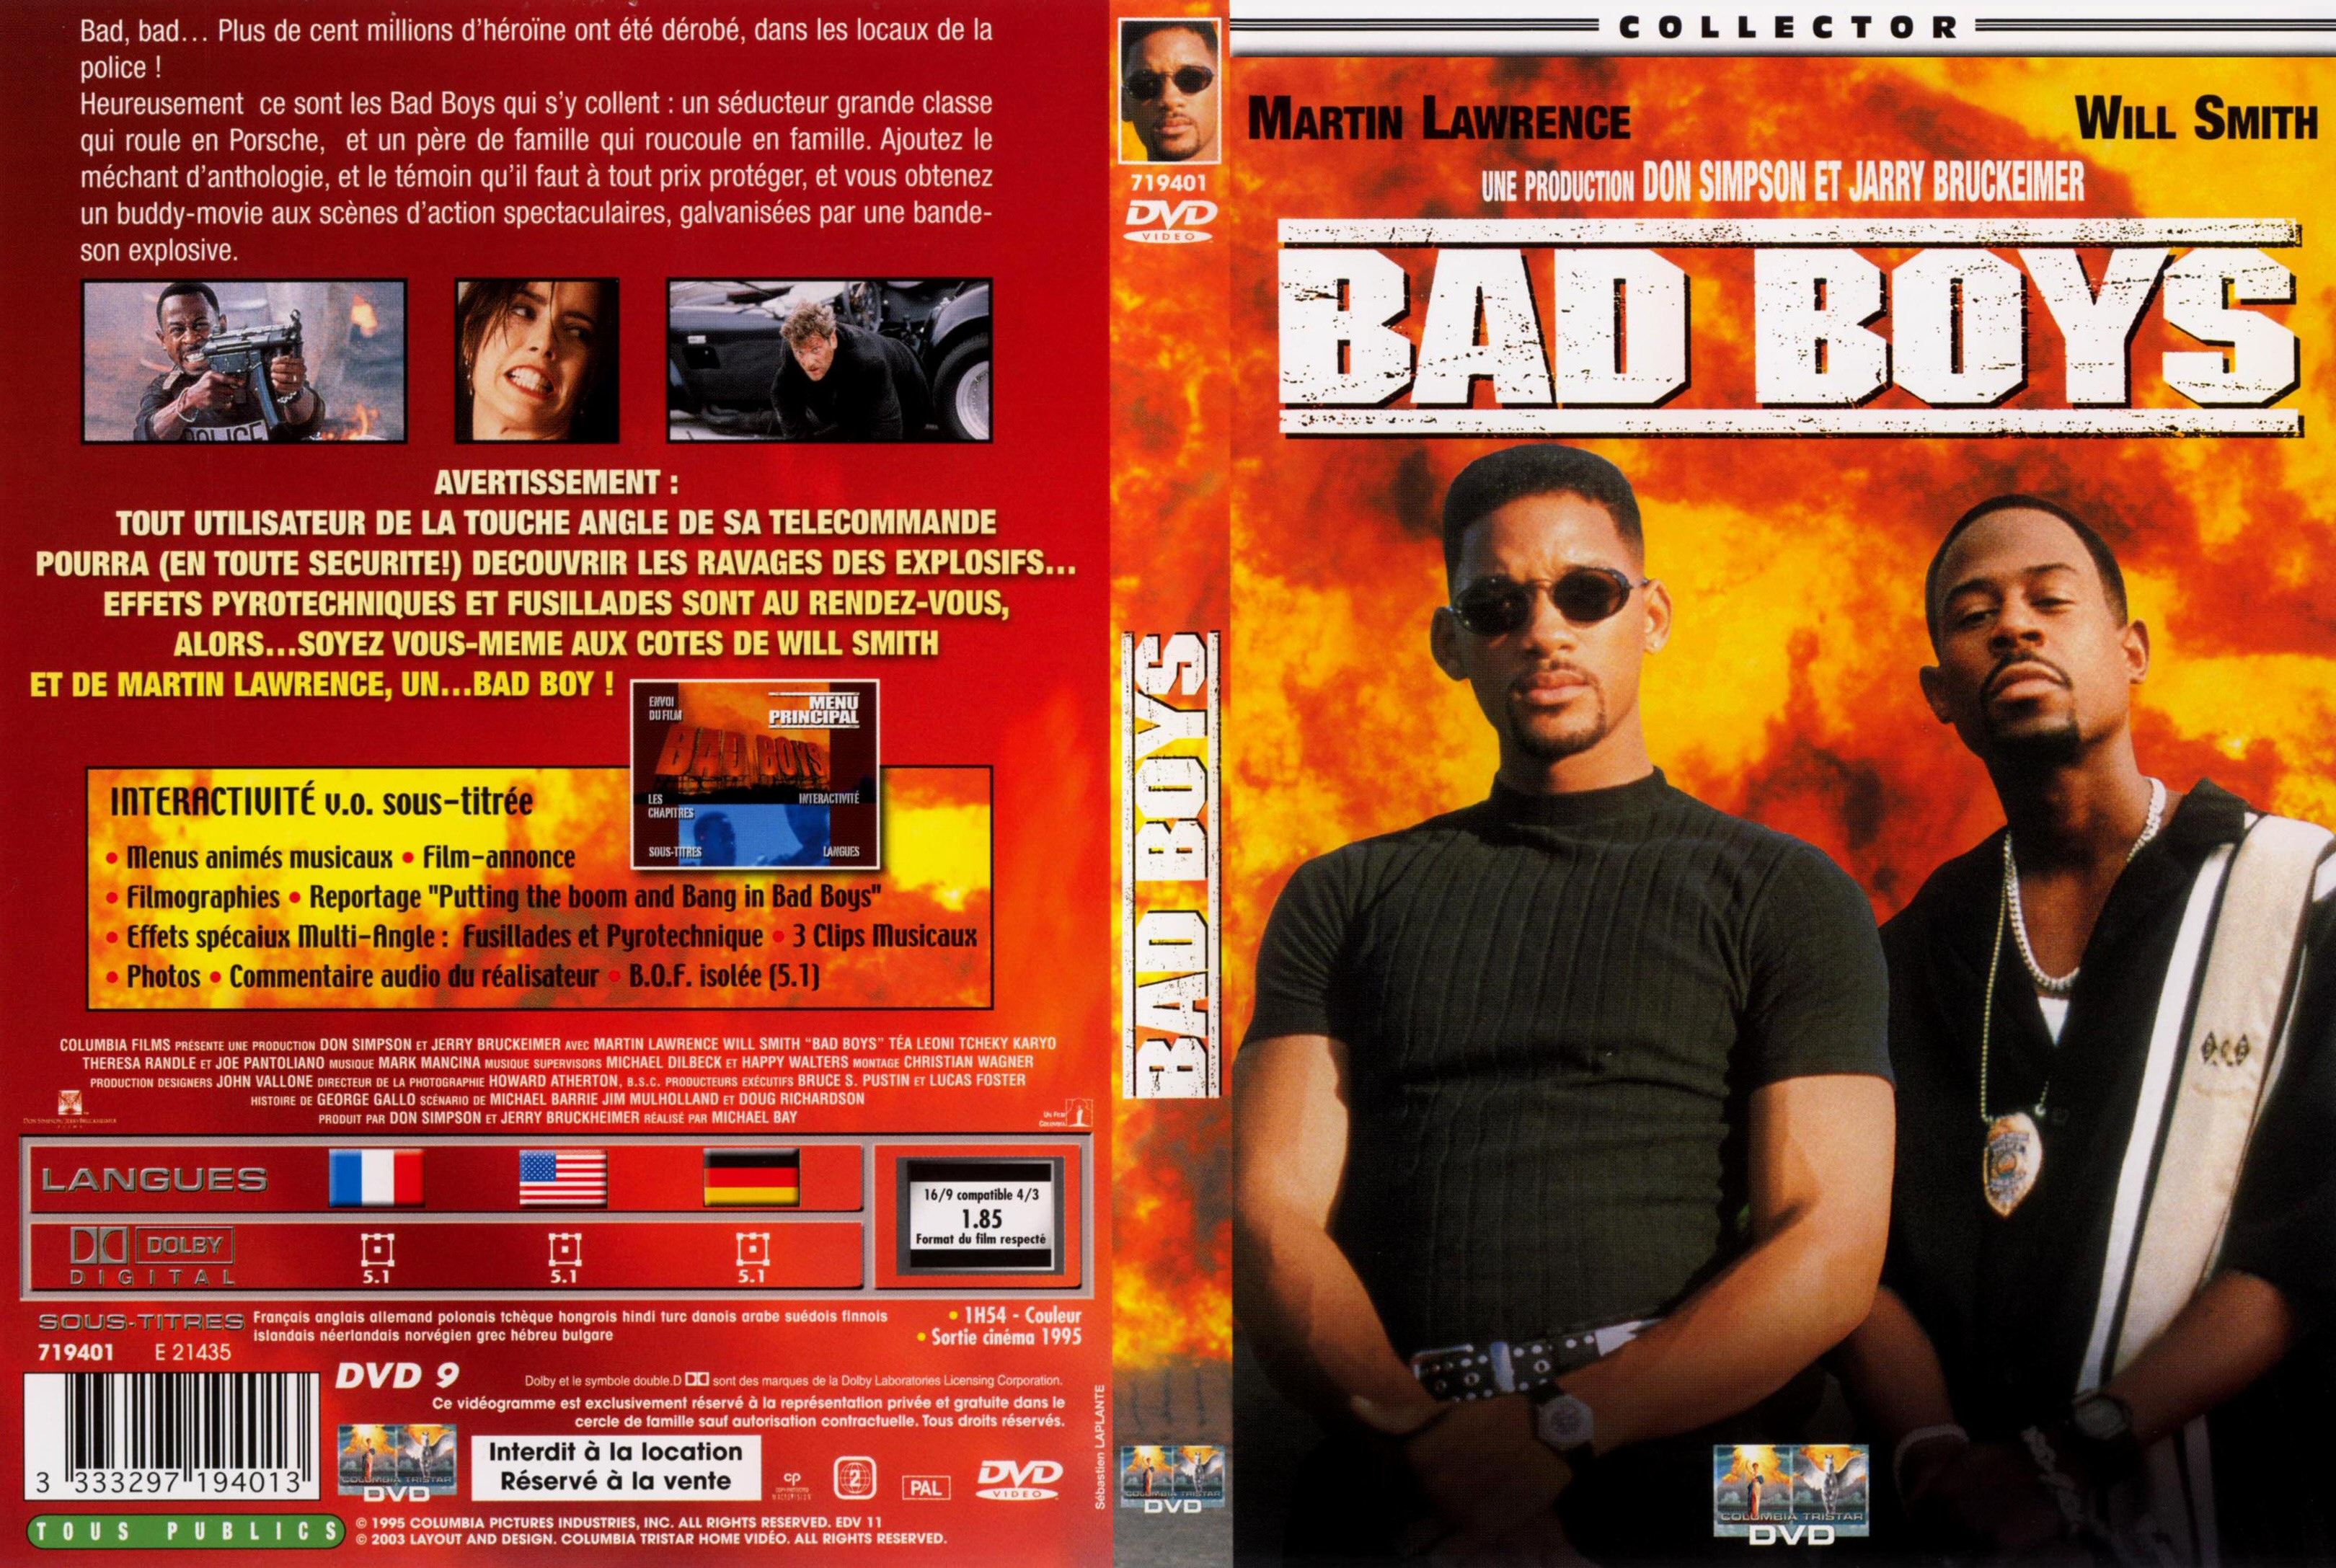 Bang bad. Bad boys 1995. Плохие парни 2 DVD. Bad boy обложка. Плохие парни (Bad boys) 1995 обложка диска DVD.